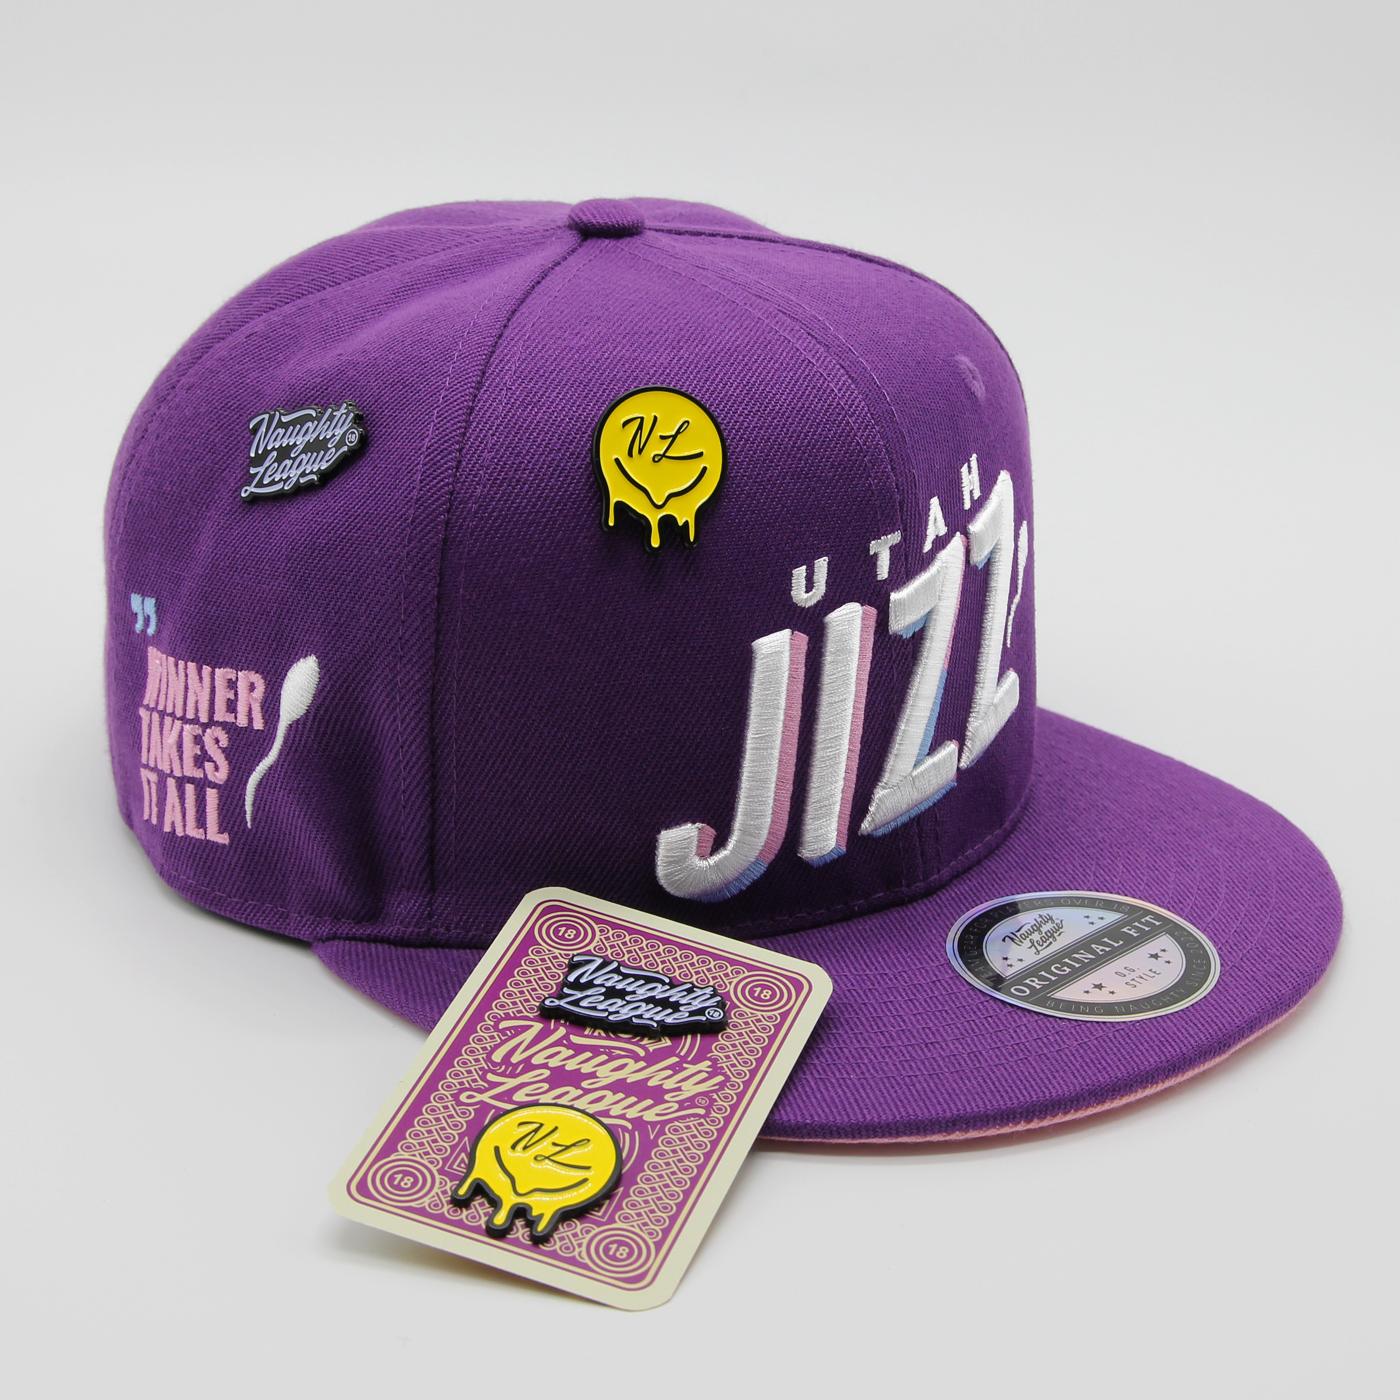 Utah Jizz Text Logo Fitted Purple